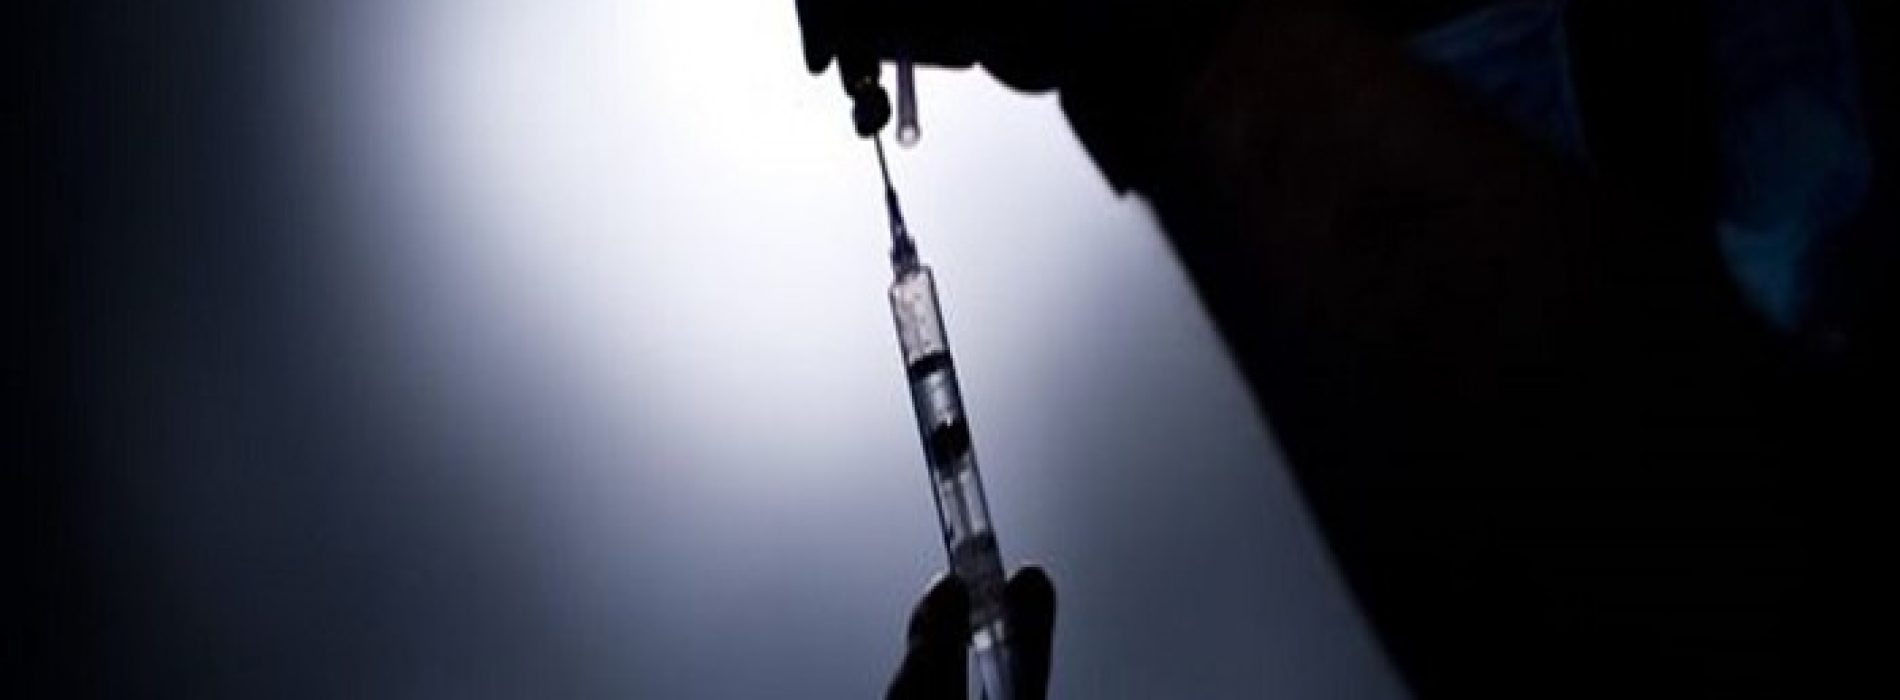 Britse overheid geeft toe dat Mexicaanse griepvaccin hersenschade veroorzaakt, slachtoffers krijgen miljoenenvergoeding